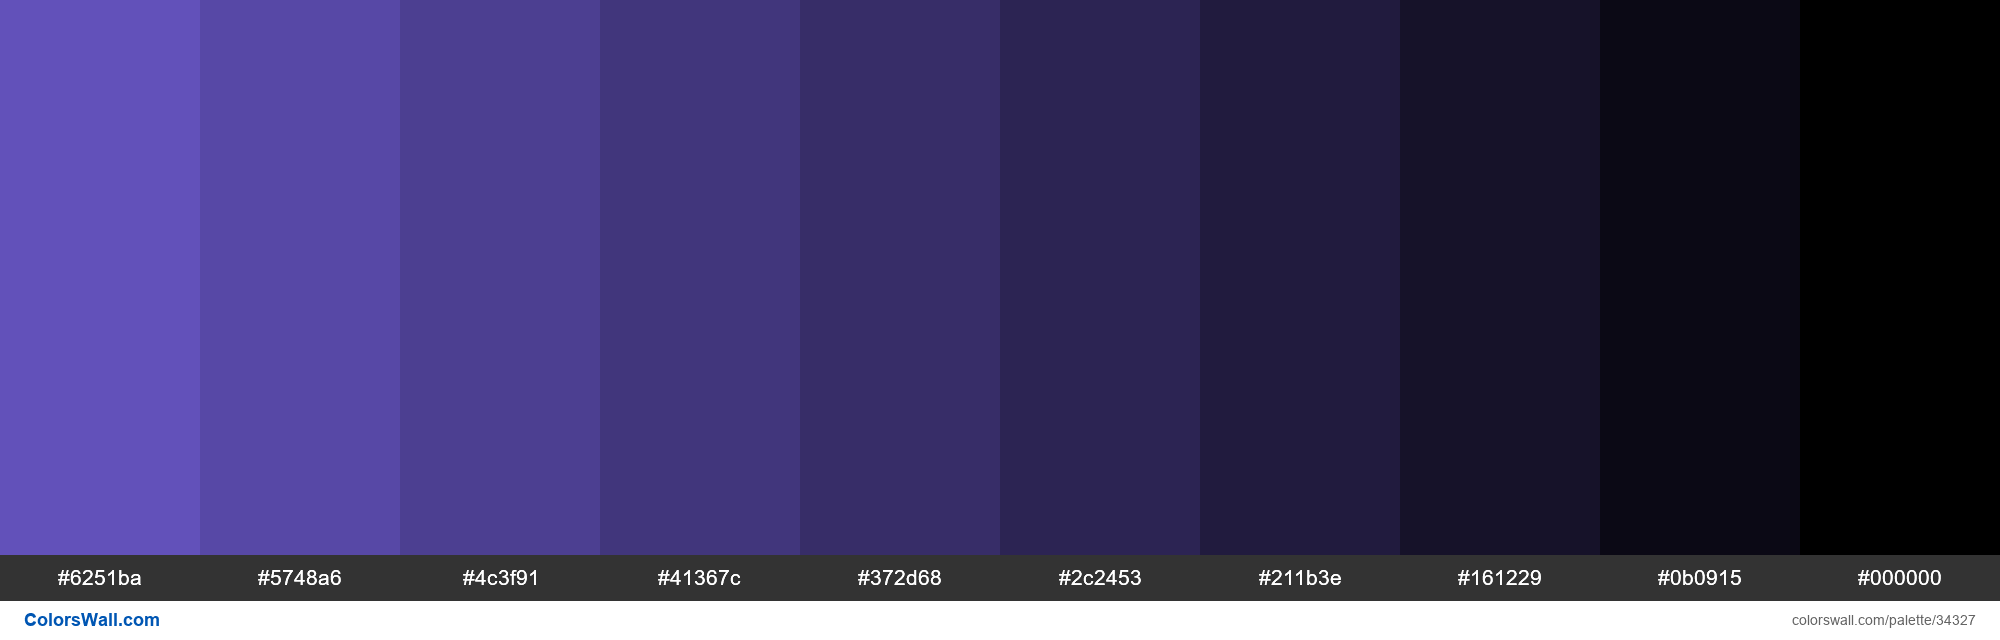 Tints XKCD Color light indigo #6d5acf hex colors palette - ColorsWall